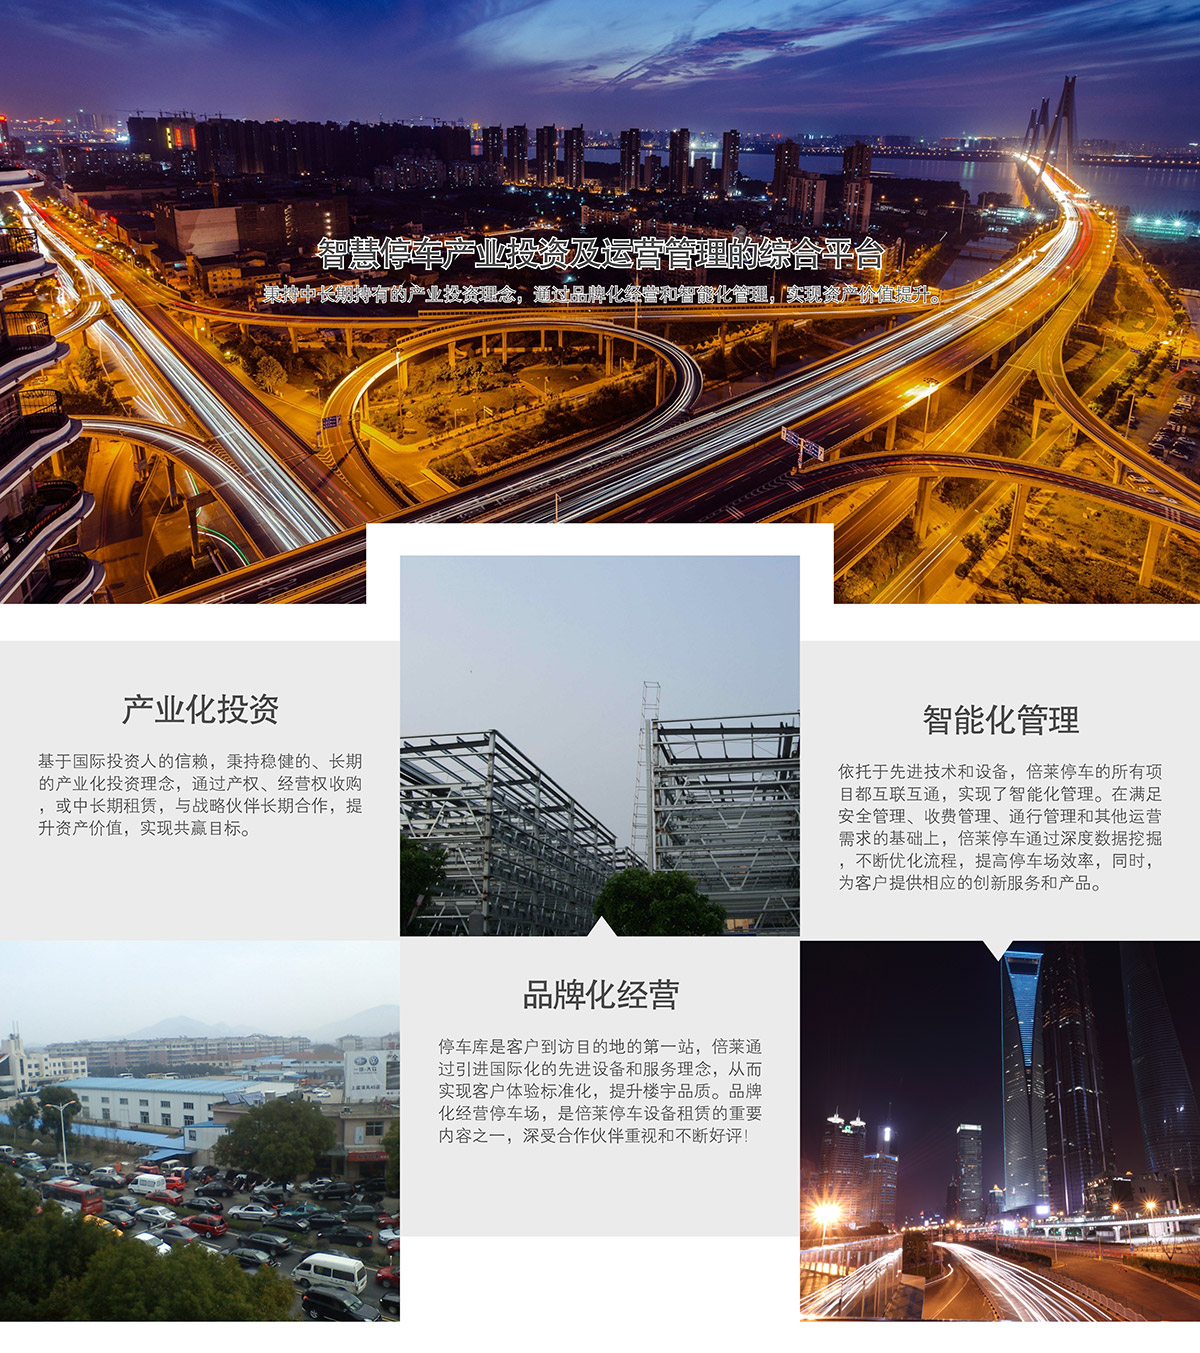 云南智慧停车产业投资及运营管理的综合平台.jpg